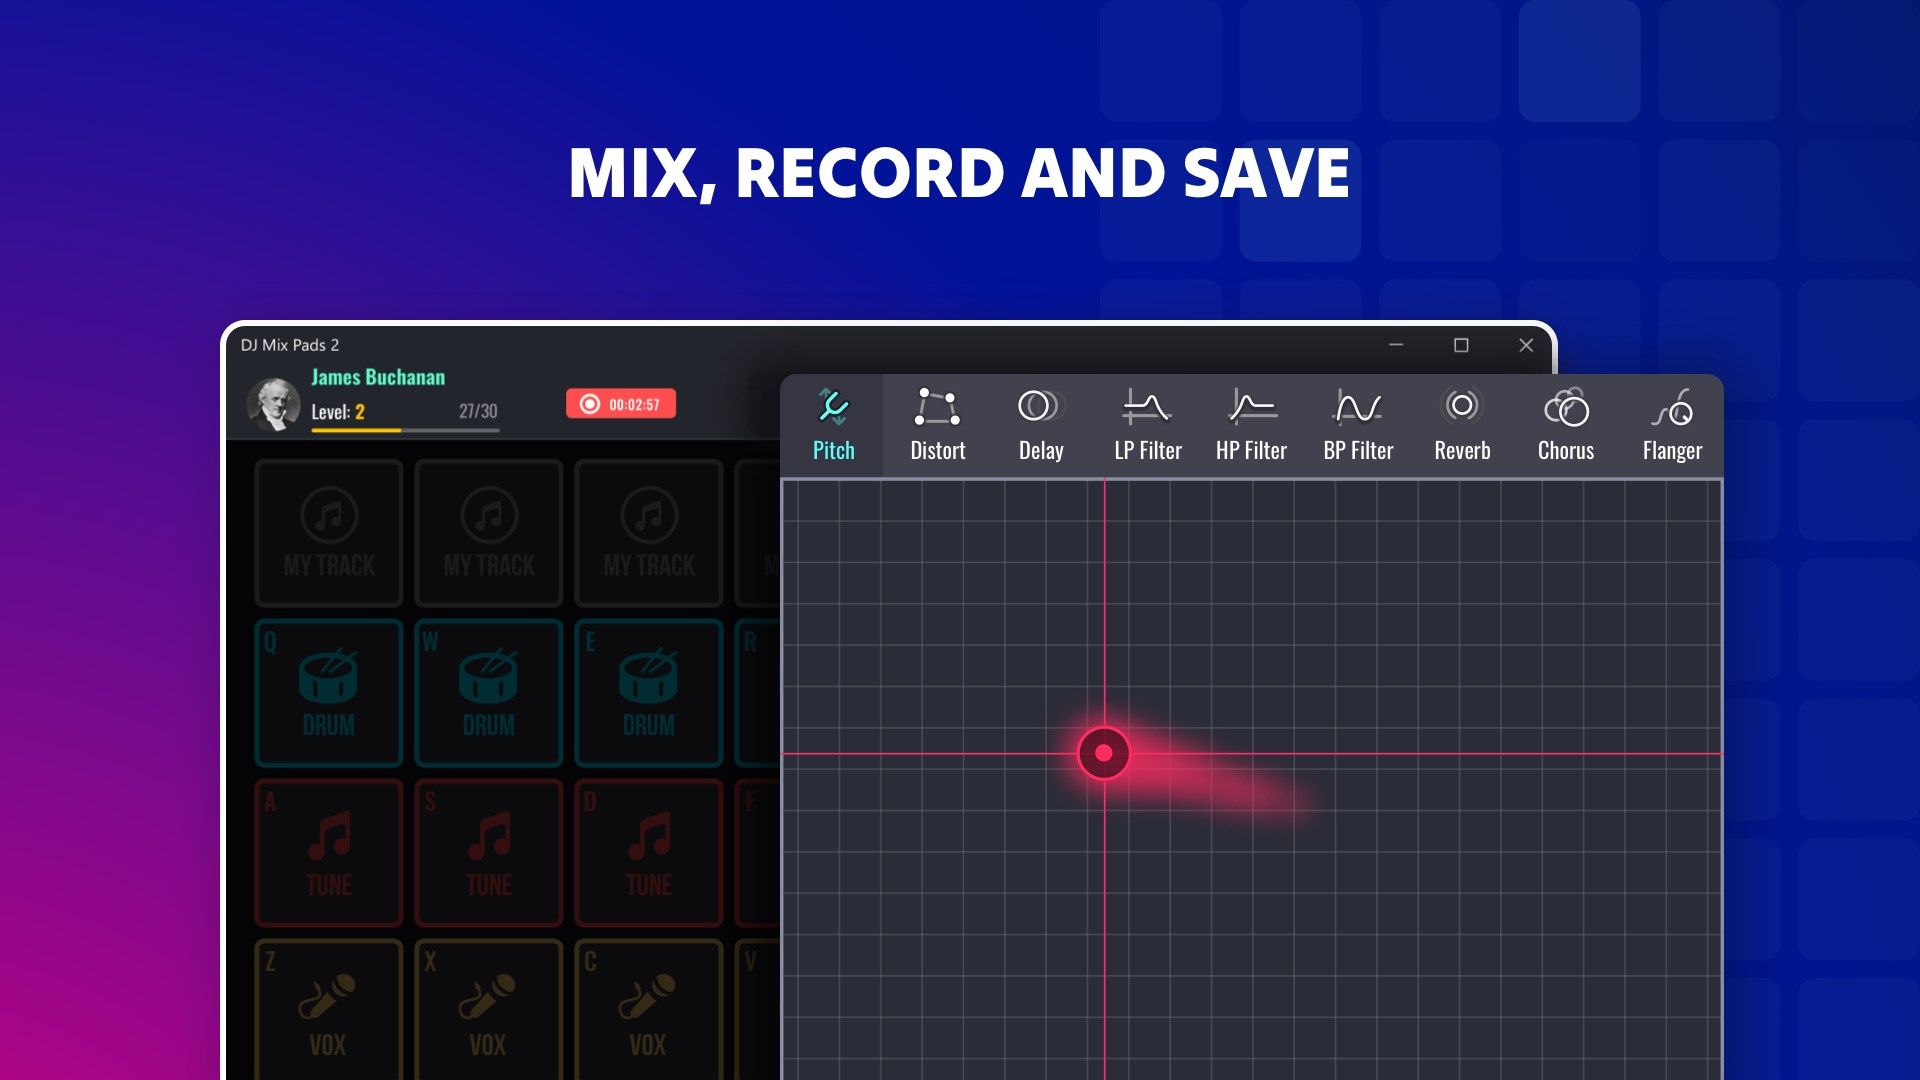 DJ Mix Pads 2 - Beat Making Launchpad